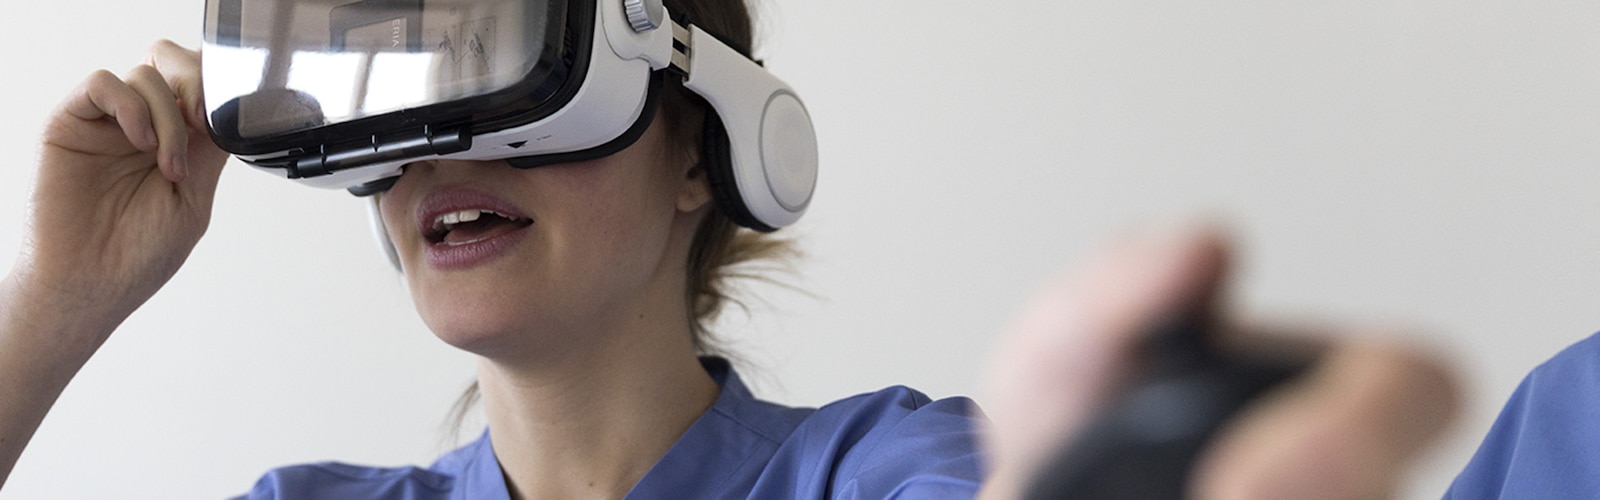 Μια νοσοκόμα φοράει γυαλιά εικονικής πραγματικότητας